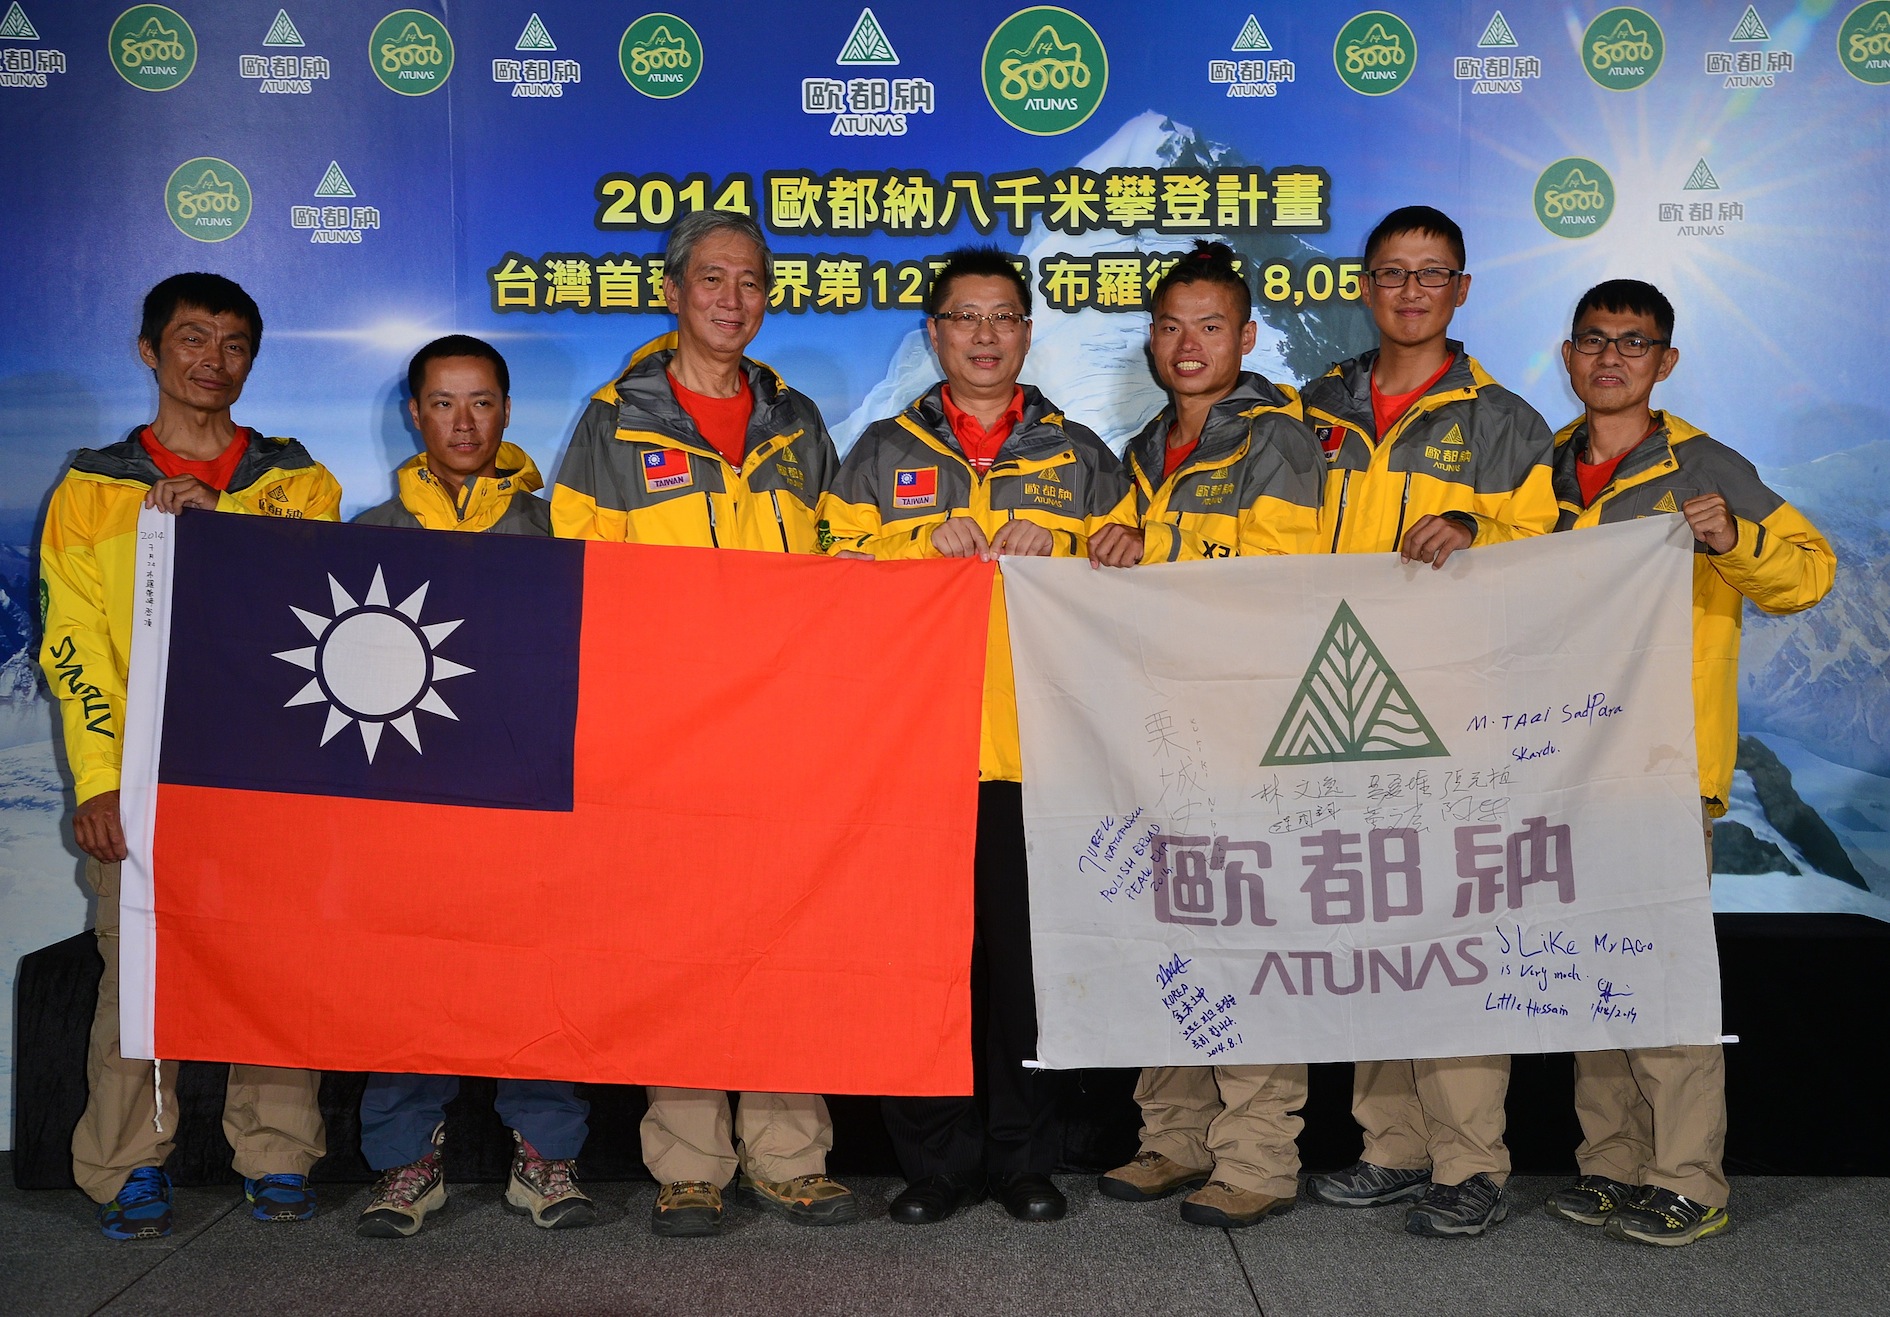 中華民國國旗首度飄揚世界第十二高峰8051M布羅德峰